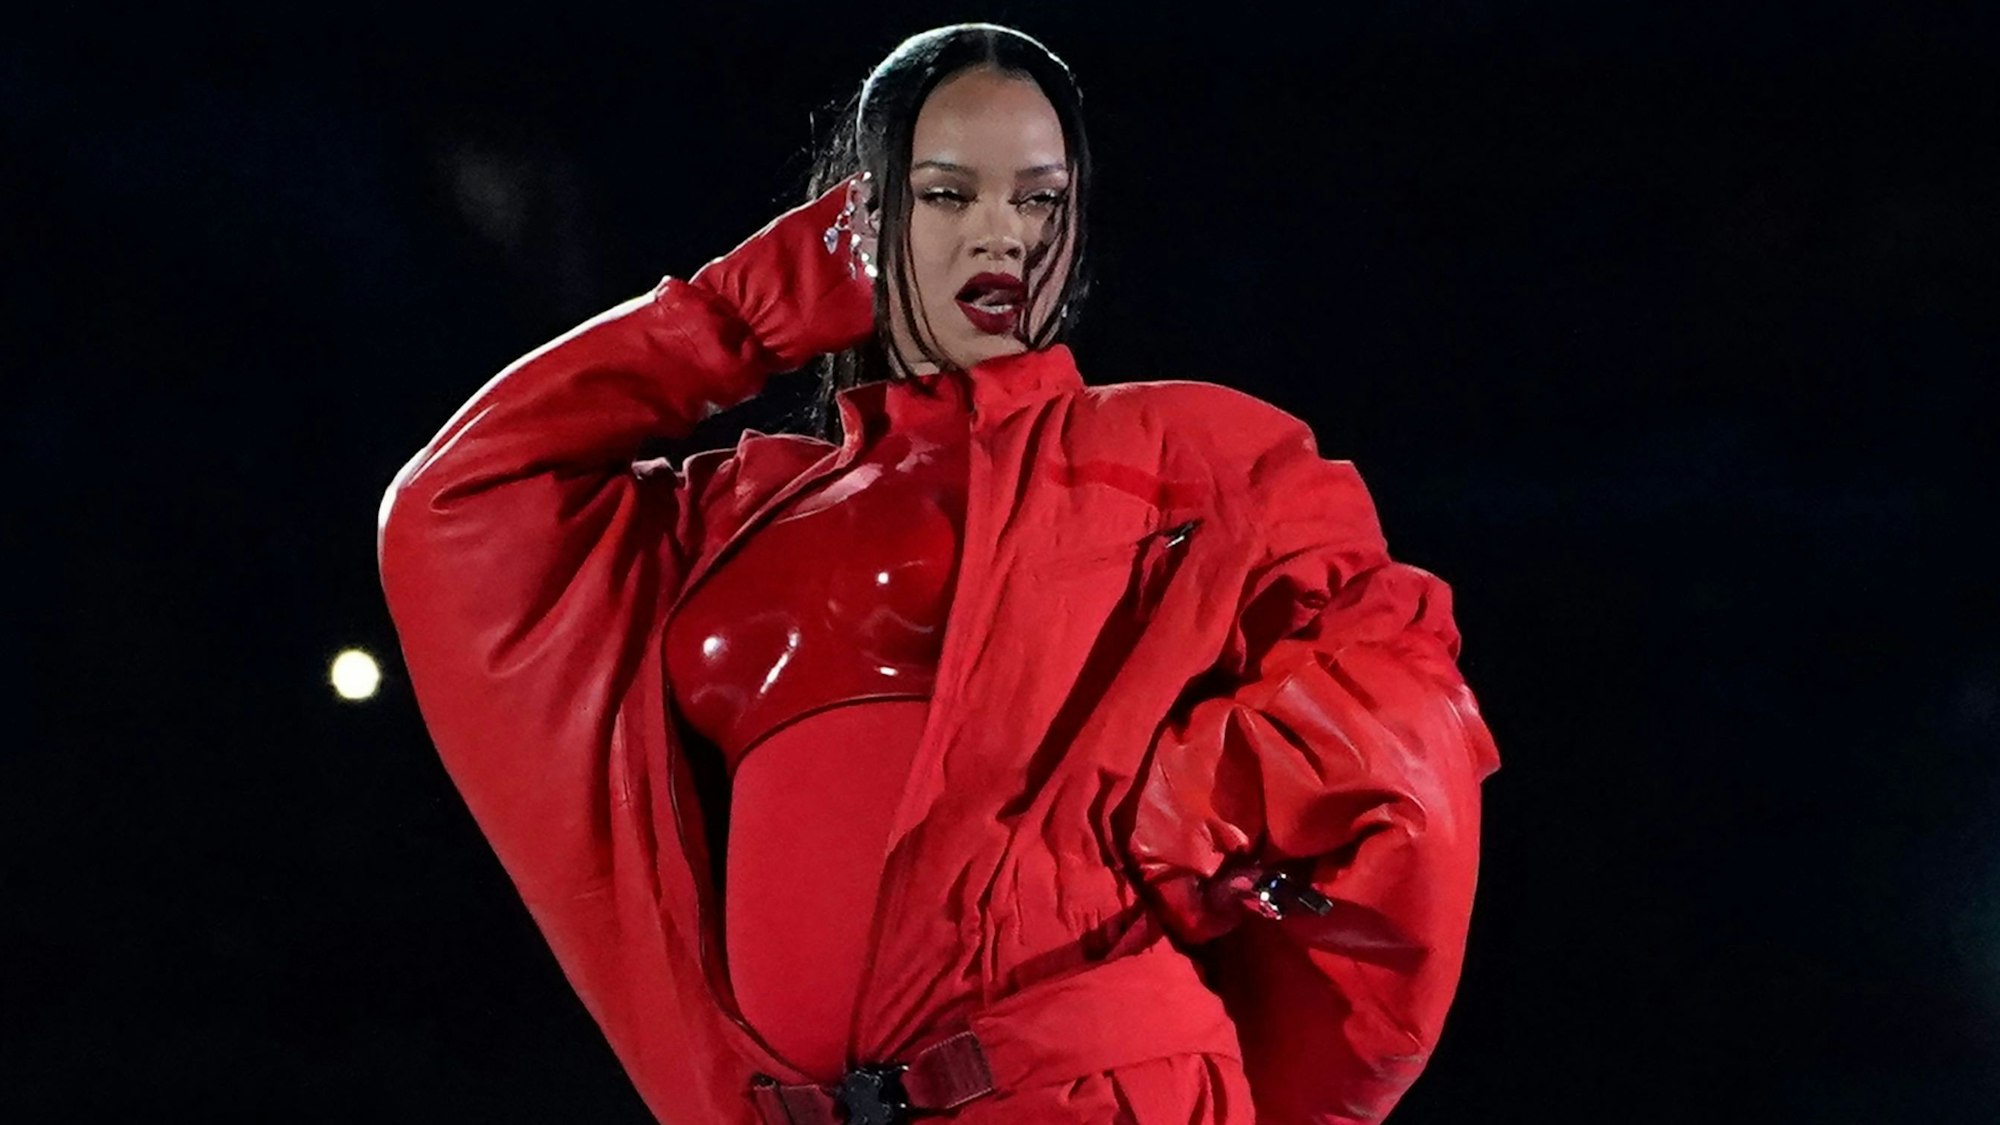 Superstar Rihanna verrät während ihres Auftritts, dass sie zum zweiten Mal schwanger ist.